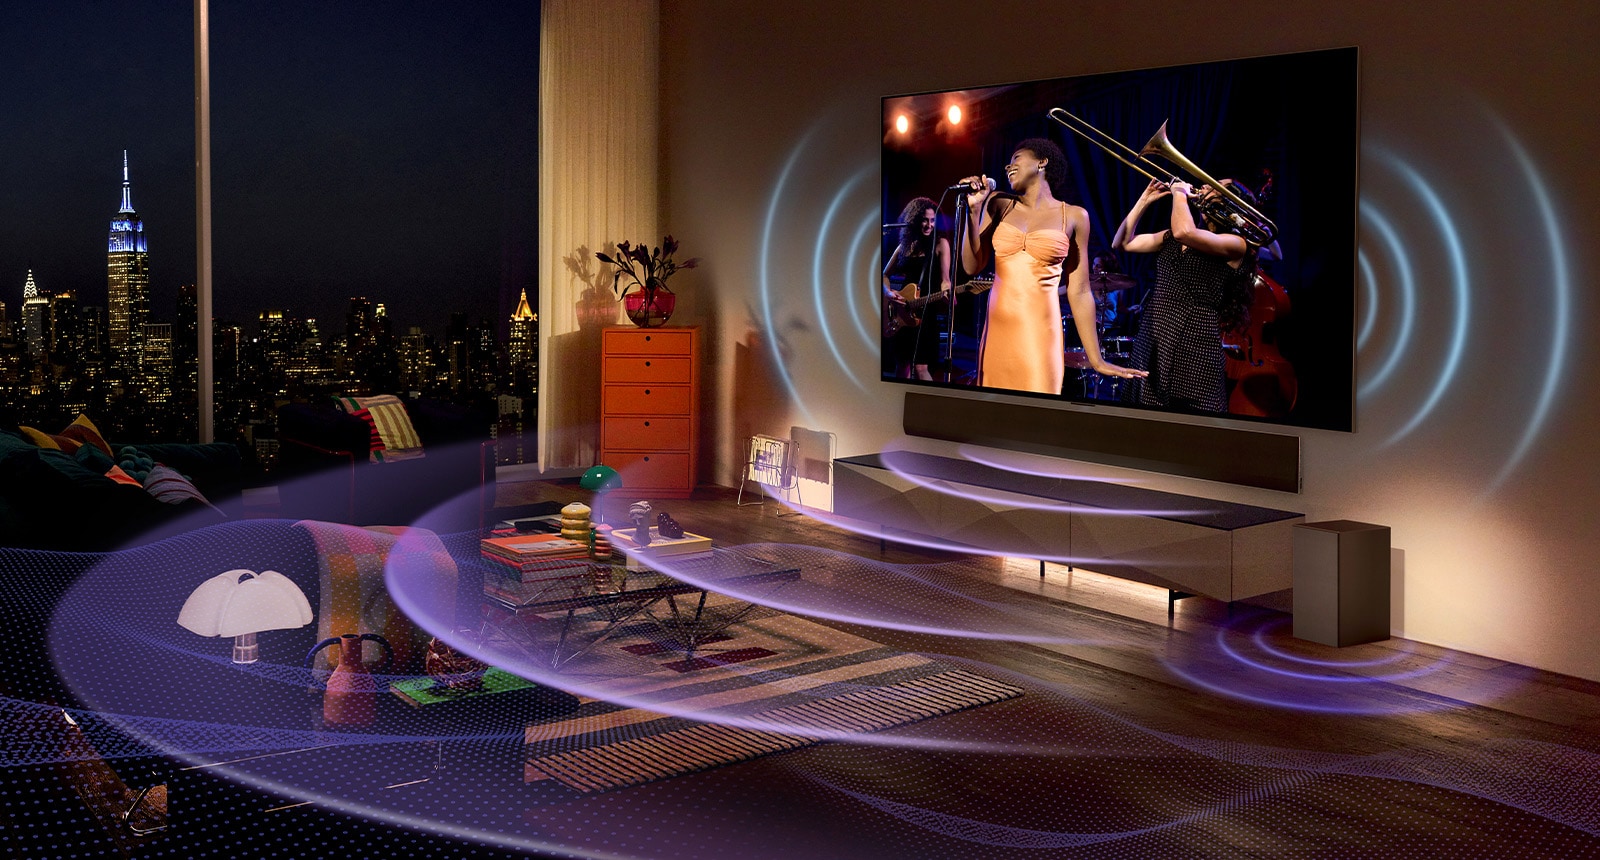 Фотография OLED-телевизора LG в помещении.  По телевизору показывают сцену с концерта.  Пространство заполнено синими изогнутыми линиями, обозначающими звук, исходящий из телевизора, и фиолетовыми изогнутыми линиями, обозначающими звук, исходящий из звуковой панели.